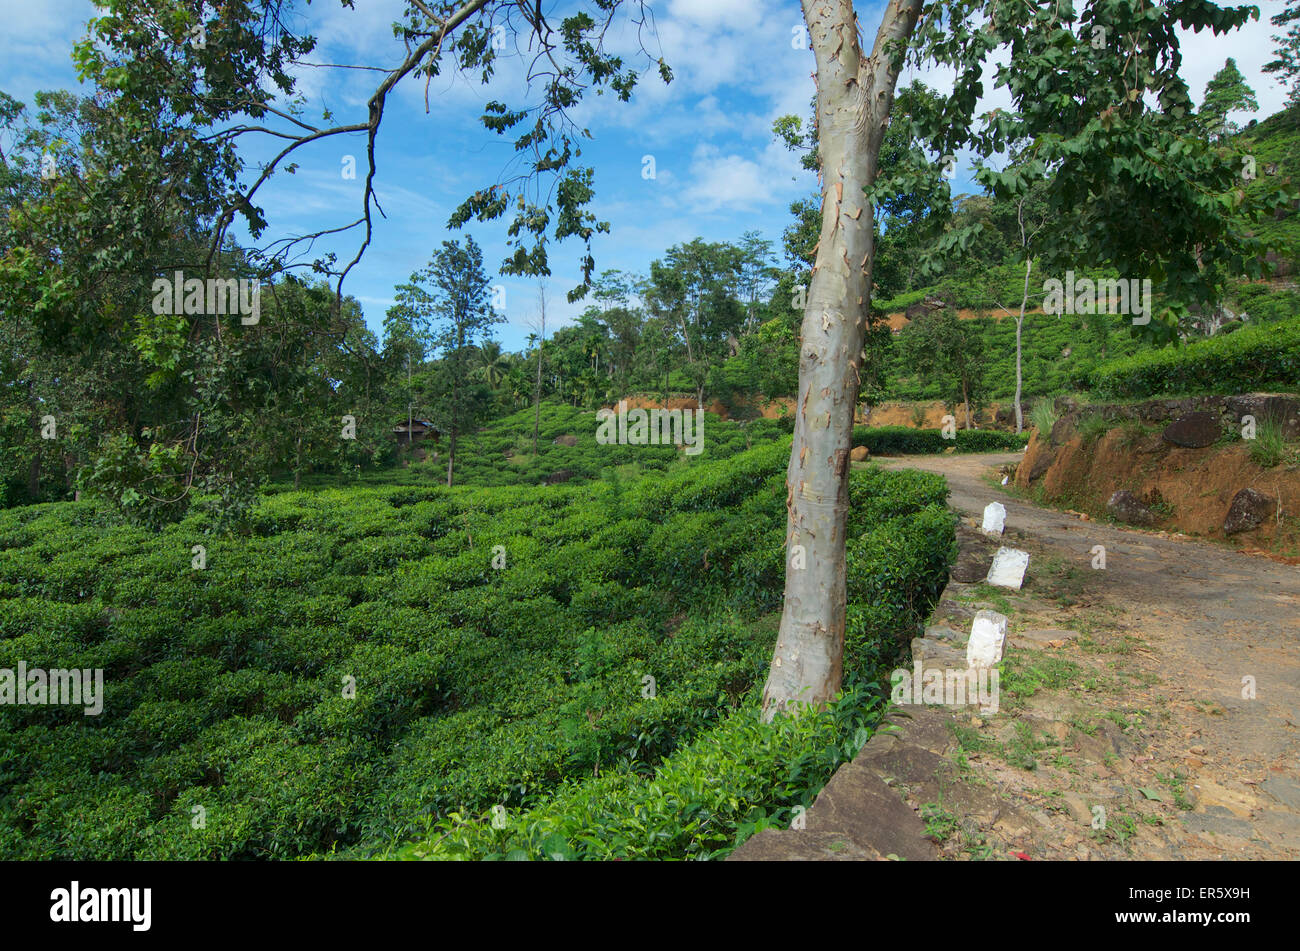 Schlechte Straße obwohl eine Tee-Garten auf dem Weg zum Sinharaja Forest Reserve Lodge in den Bergen Sinharaja, Sri Lanka Süd Stockfoto